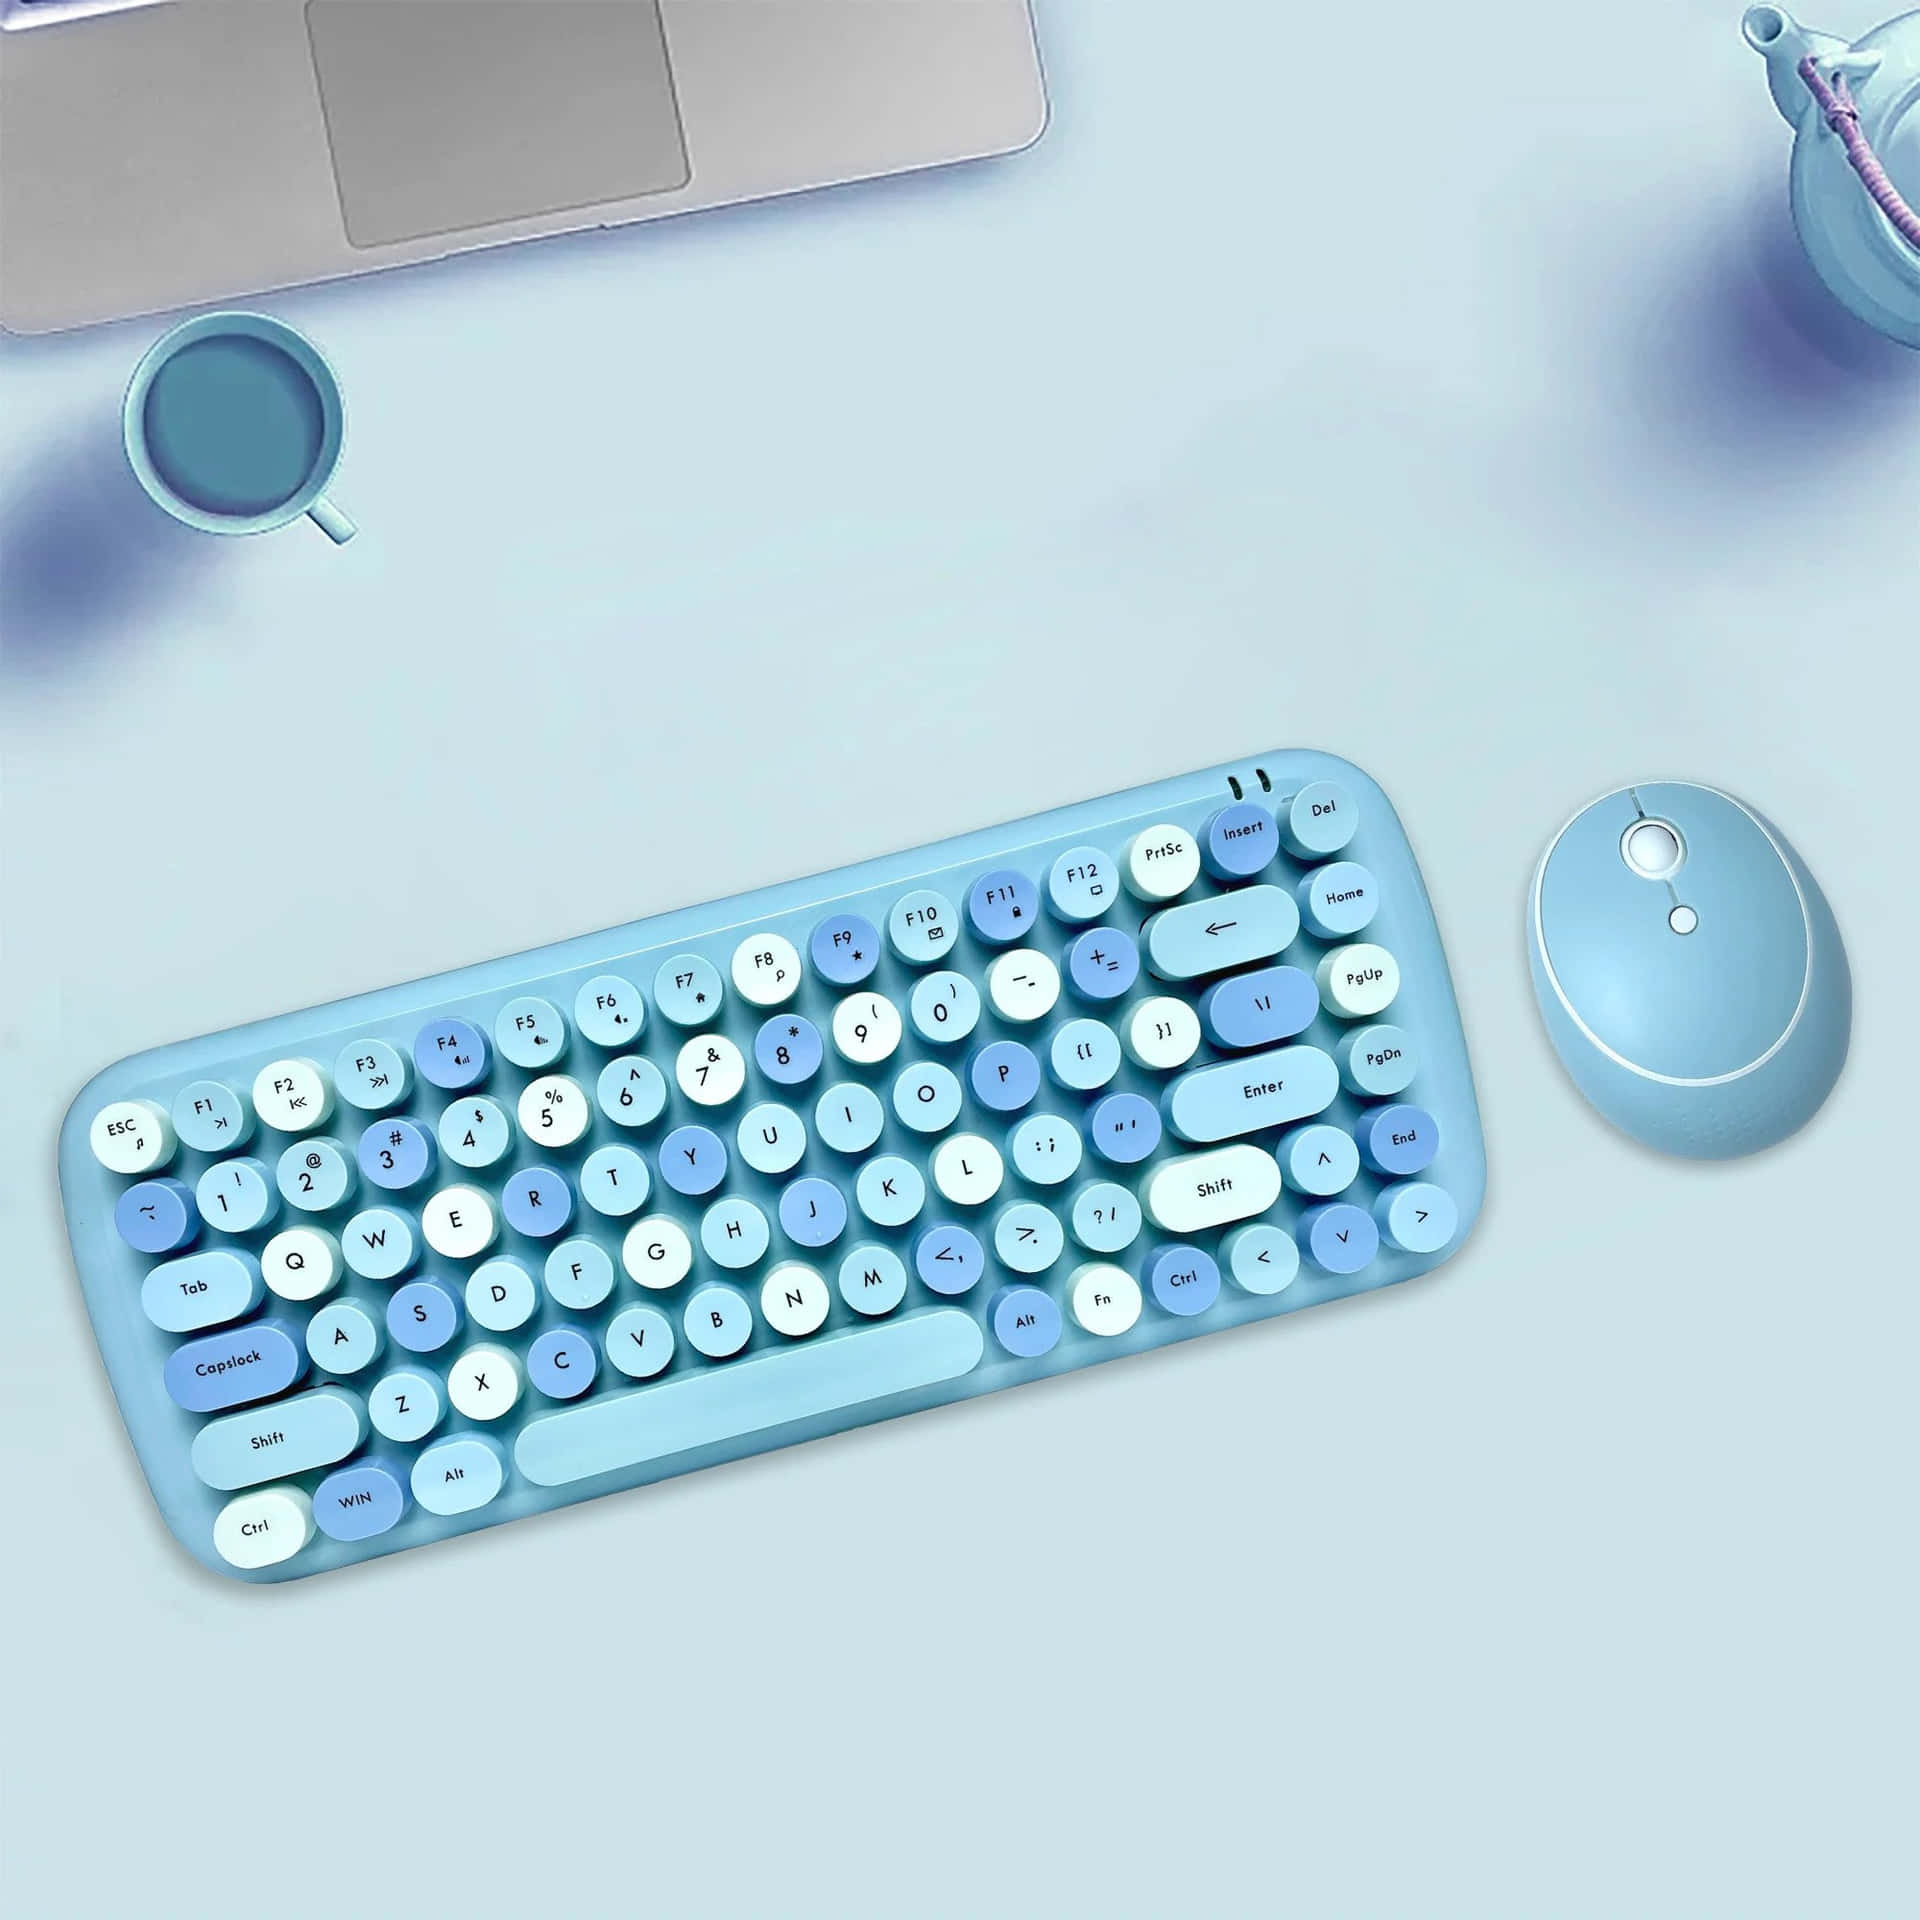 Enblå Tastatur Og Mus På Et Bord